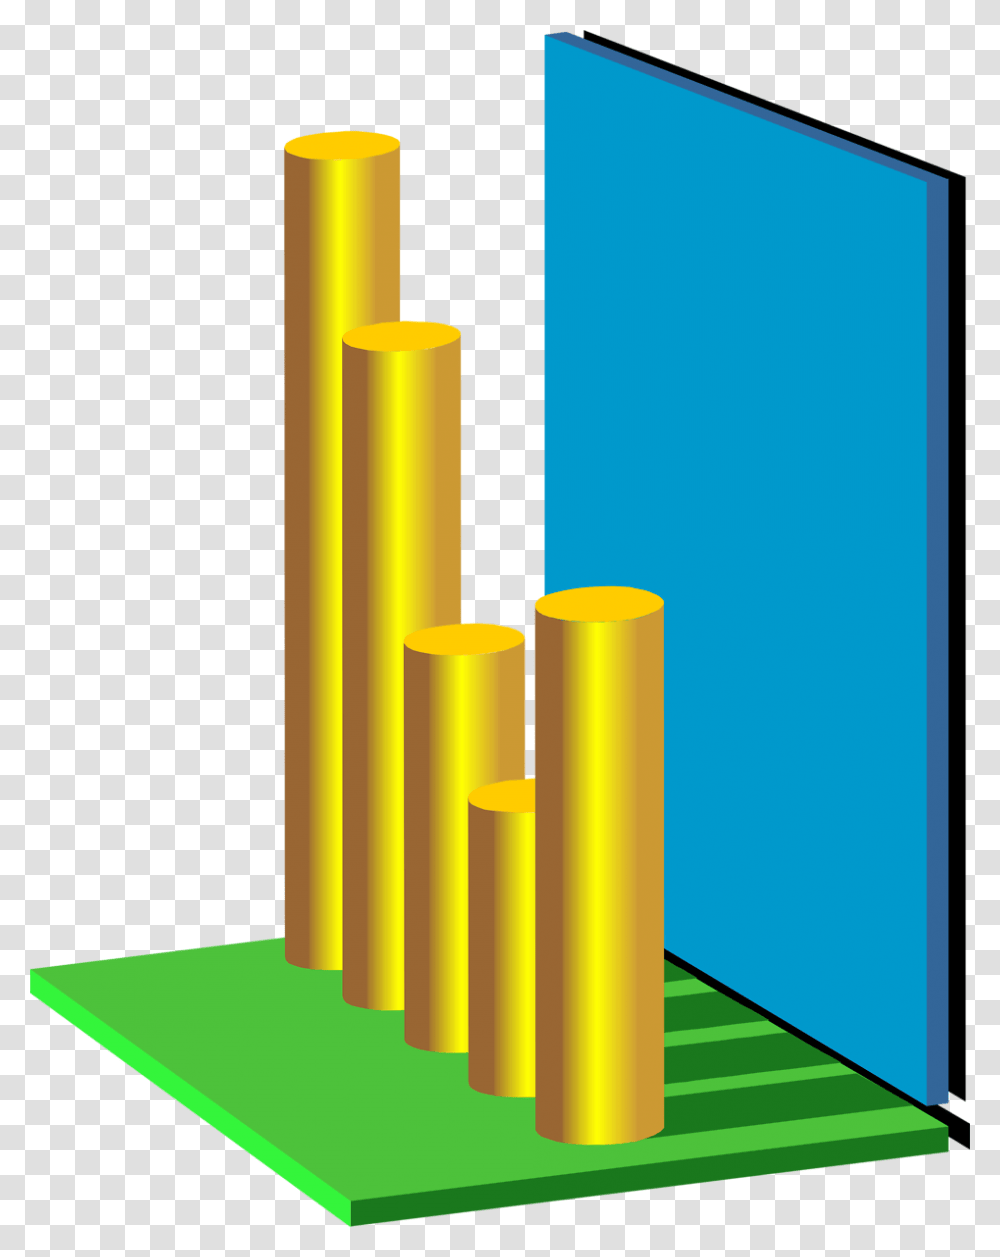 3d Graph 3d Graph No Background, Cylinder, Architecture, Building Transparent Png